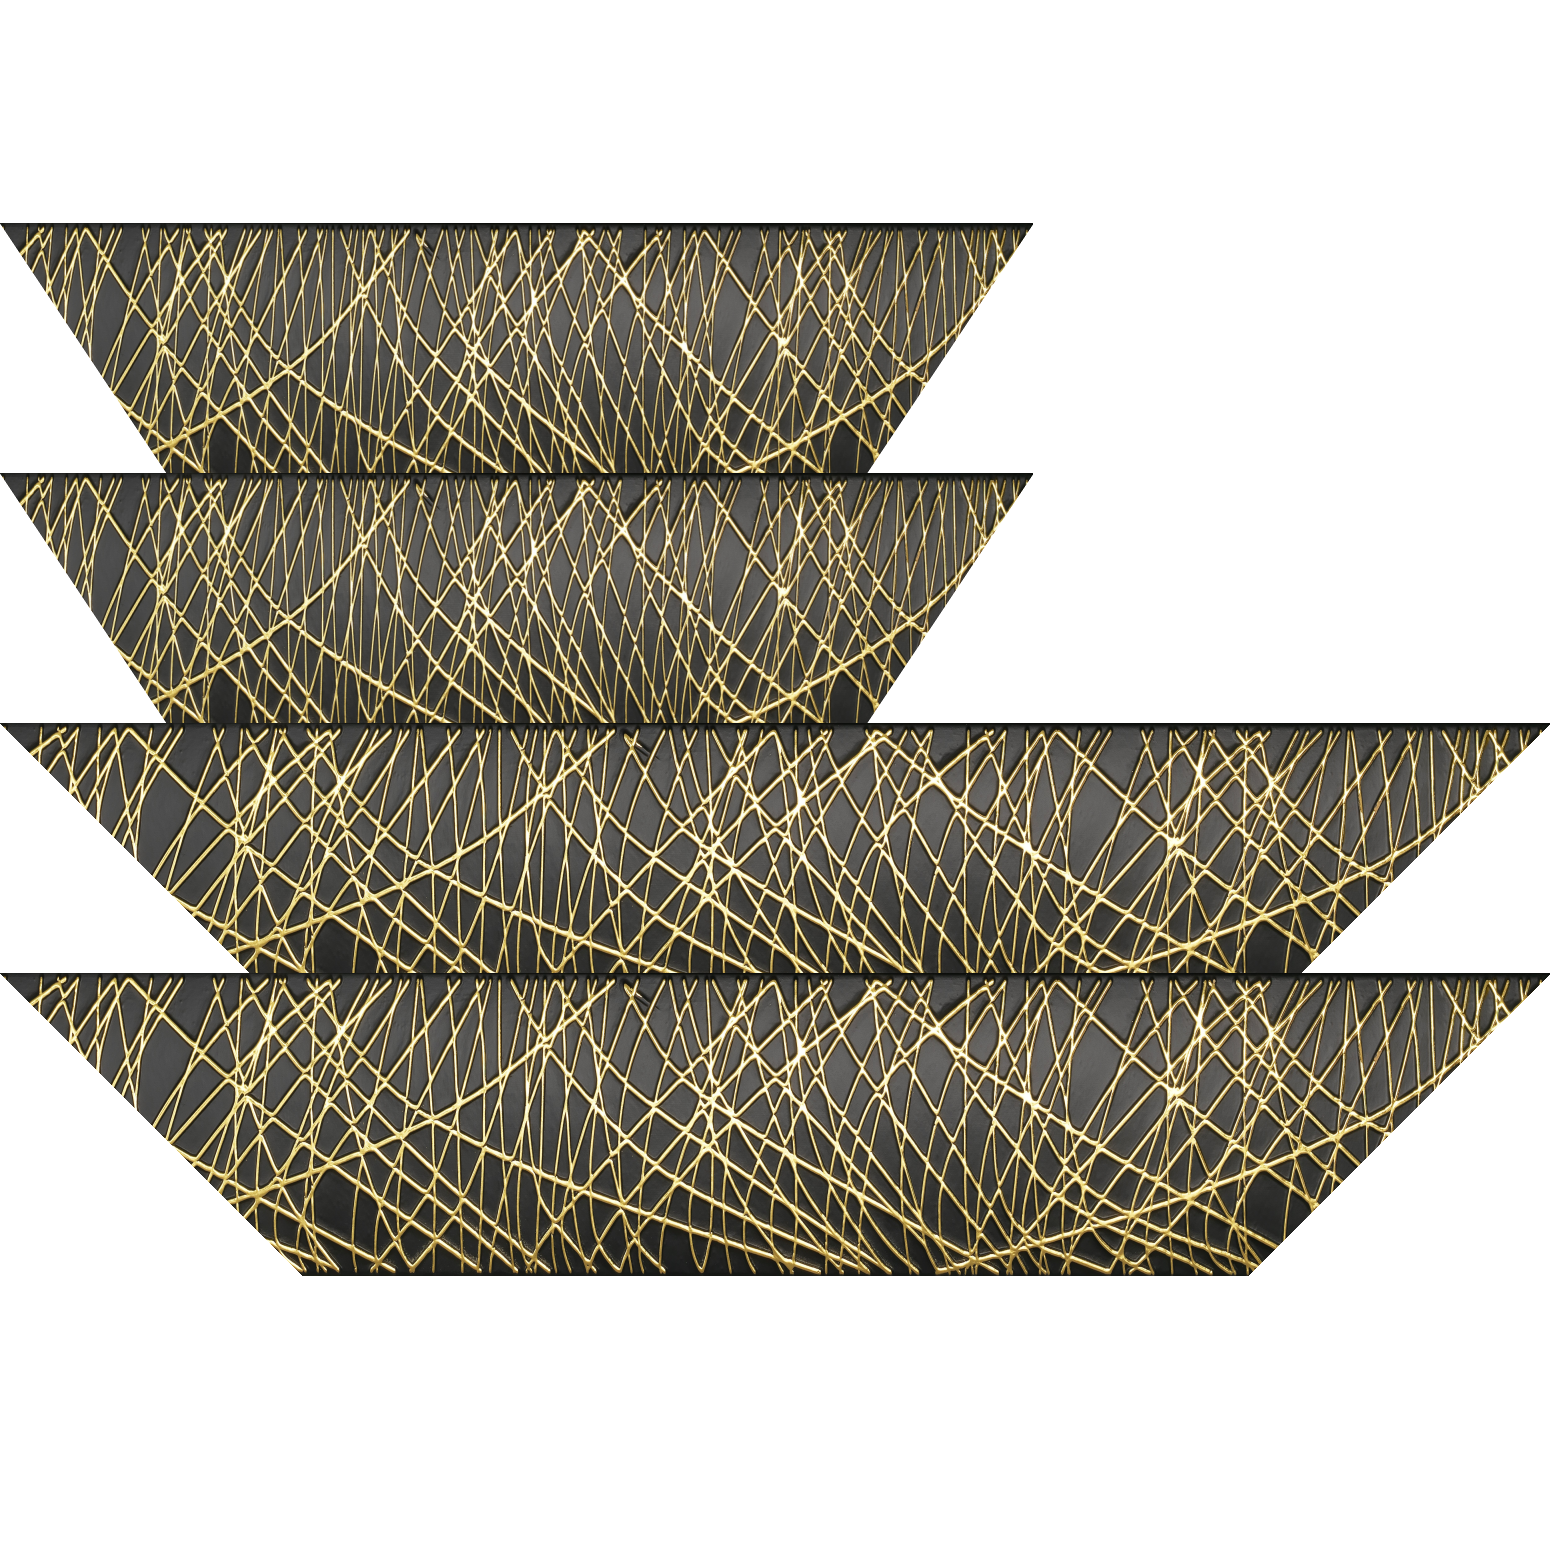 Baguette bois profil arrondi méplat largeur 9.9cm couleur noir satiné trait or en relief - 28x34